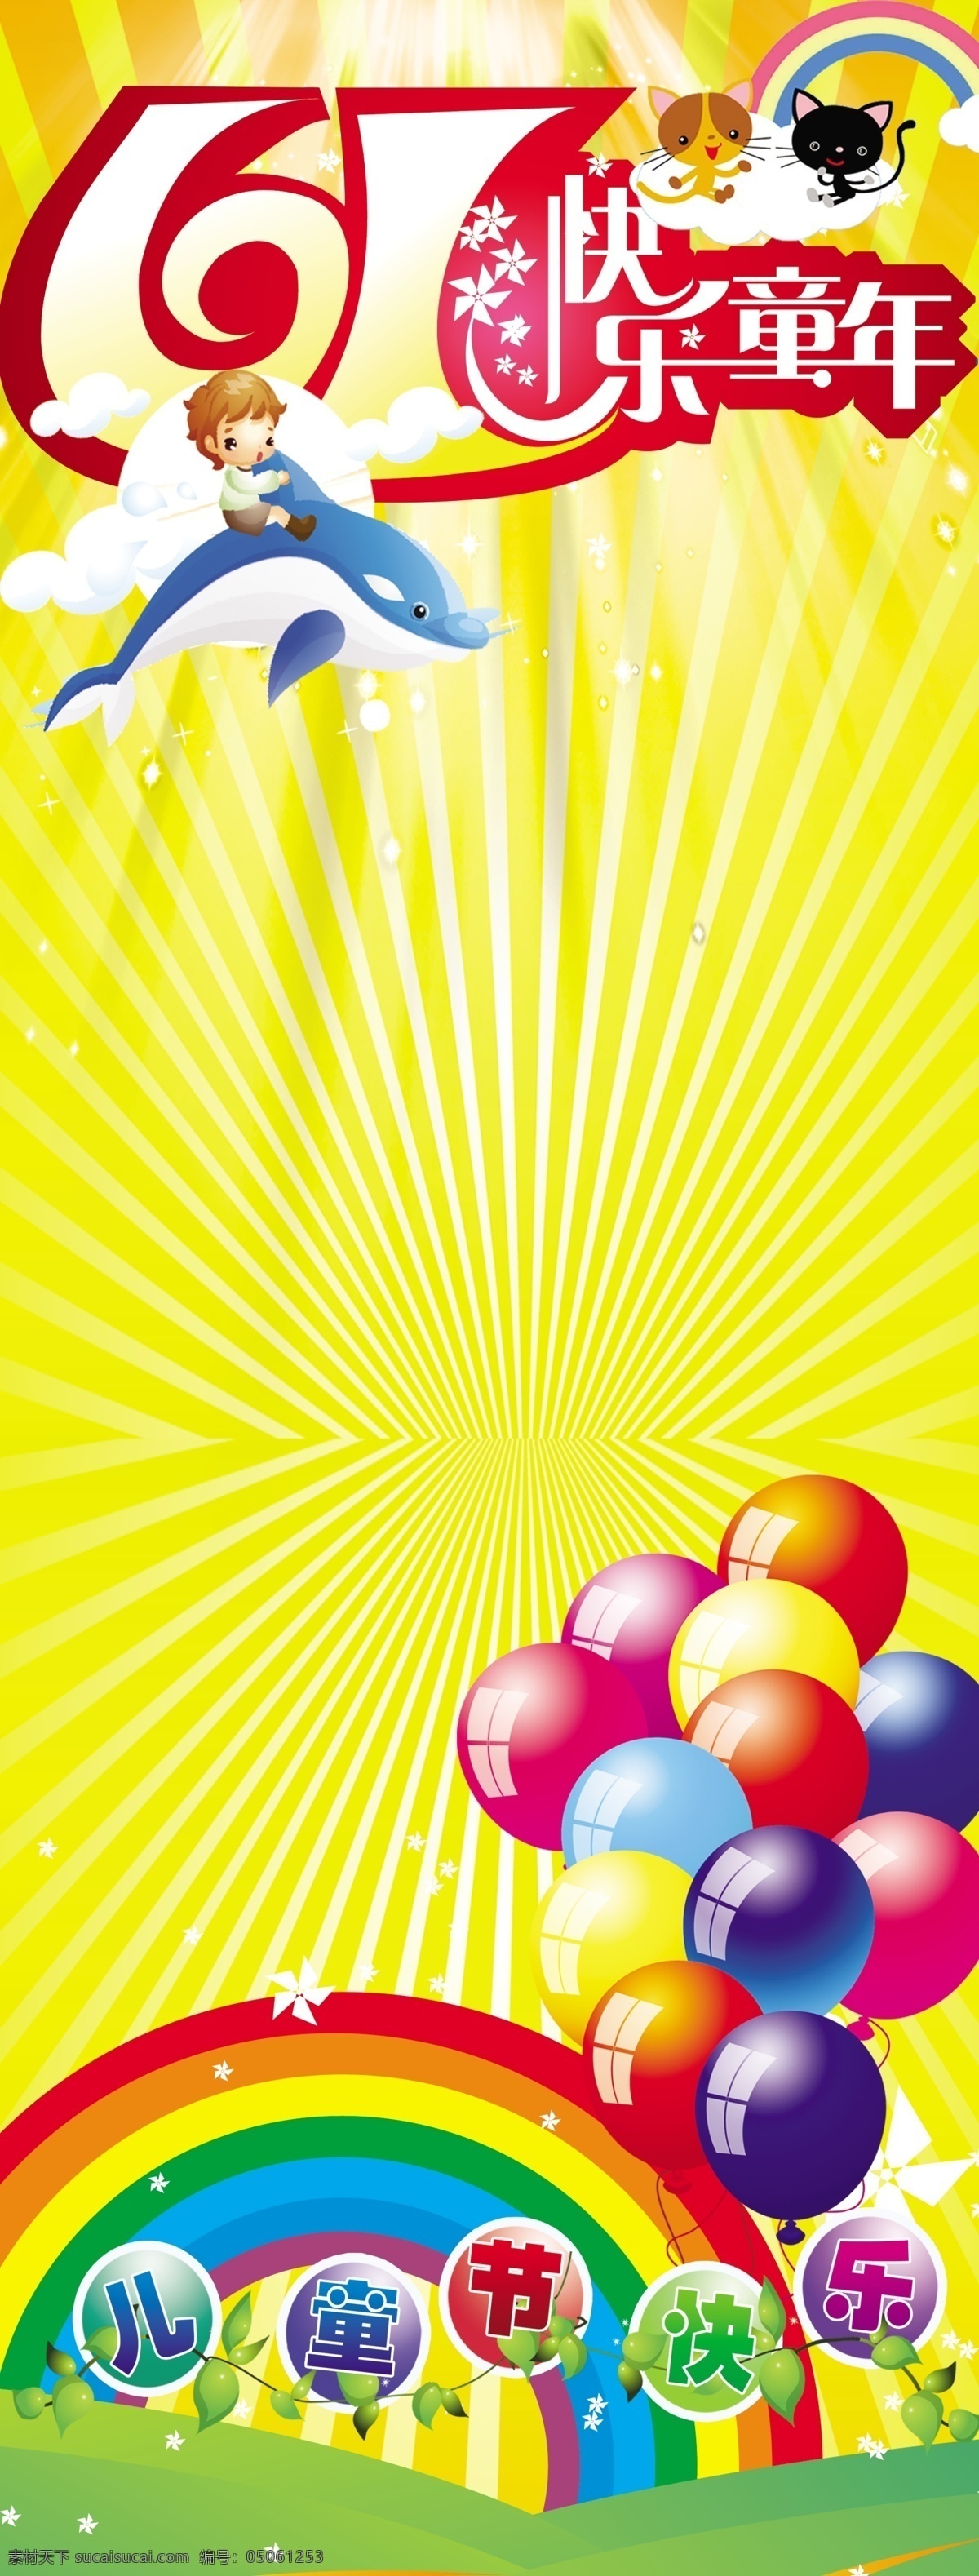 儿童节 展架 彩虹 猫咪 气球 童年 节日素材 六一儿童节